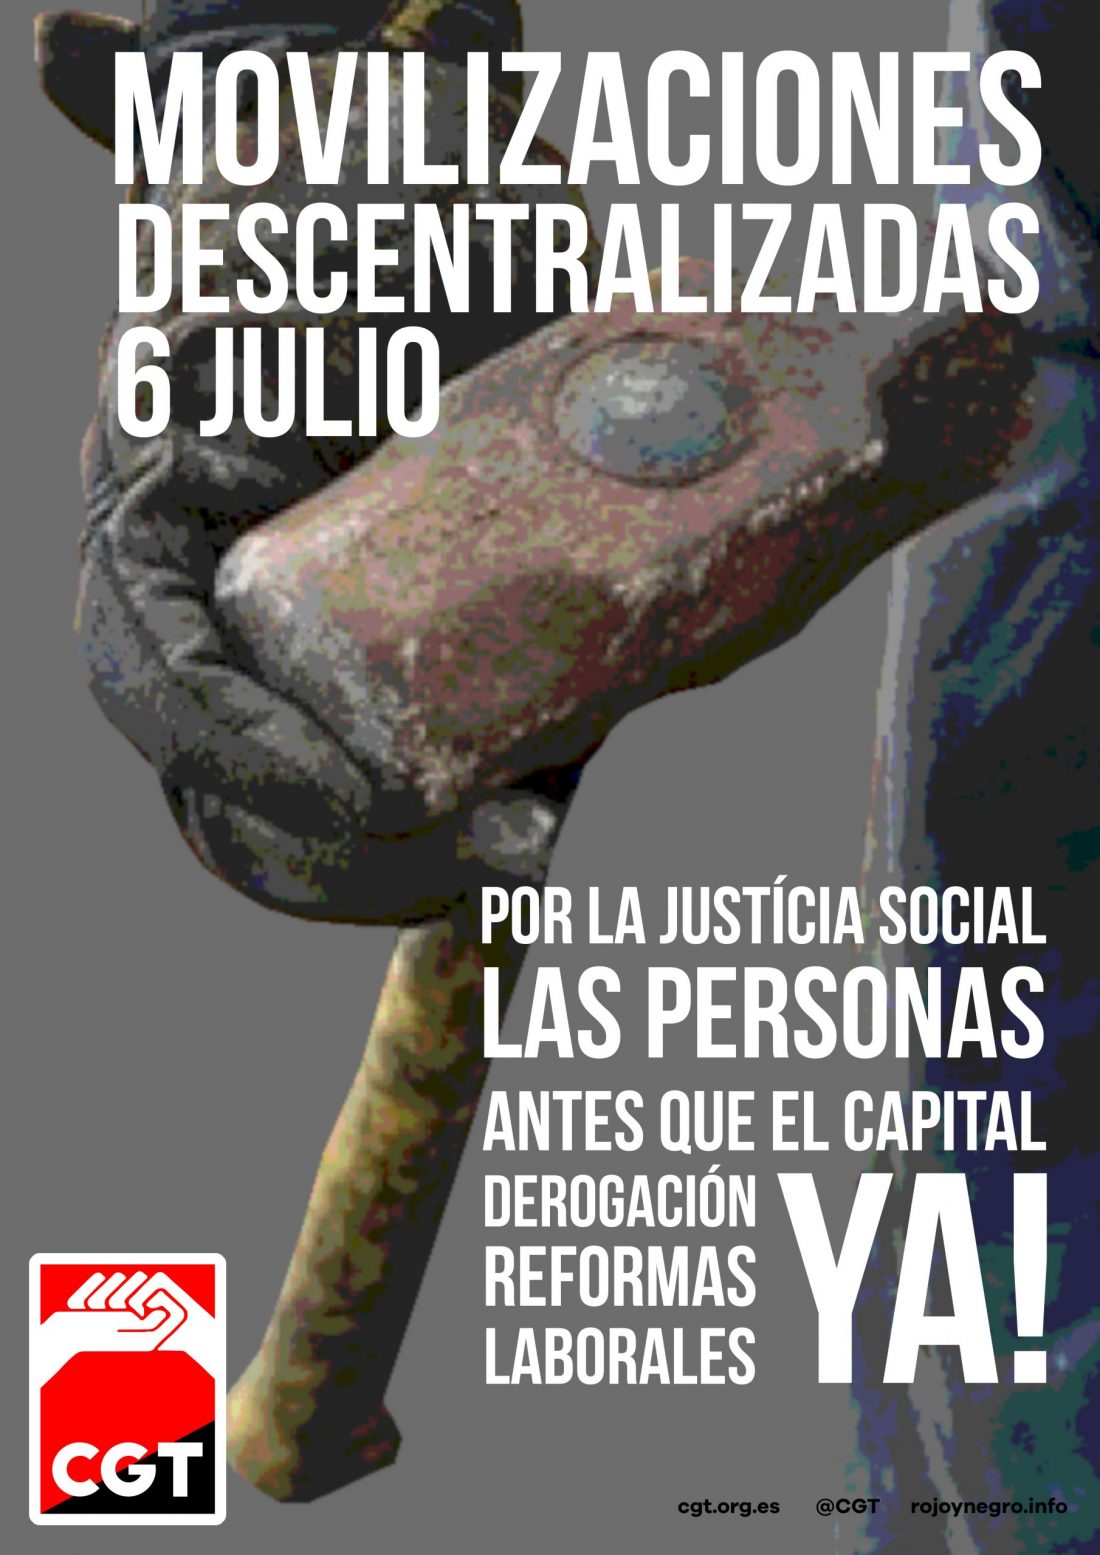 Movilizaciones Descentralizadas el 6 de julio por la derogación de las Reformas Laborales